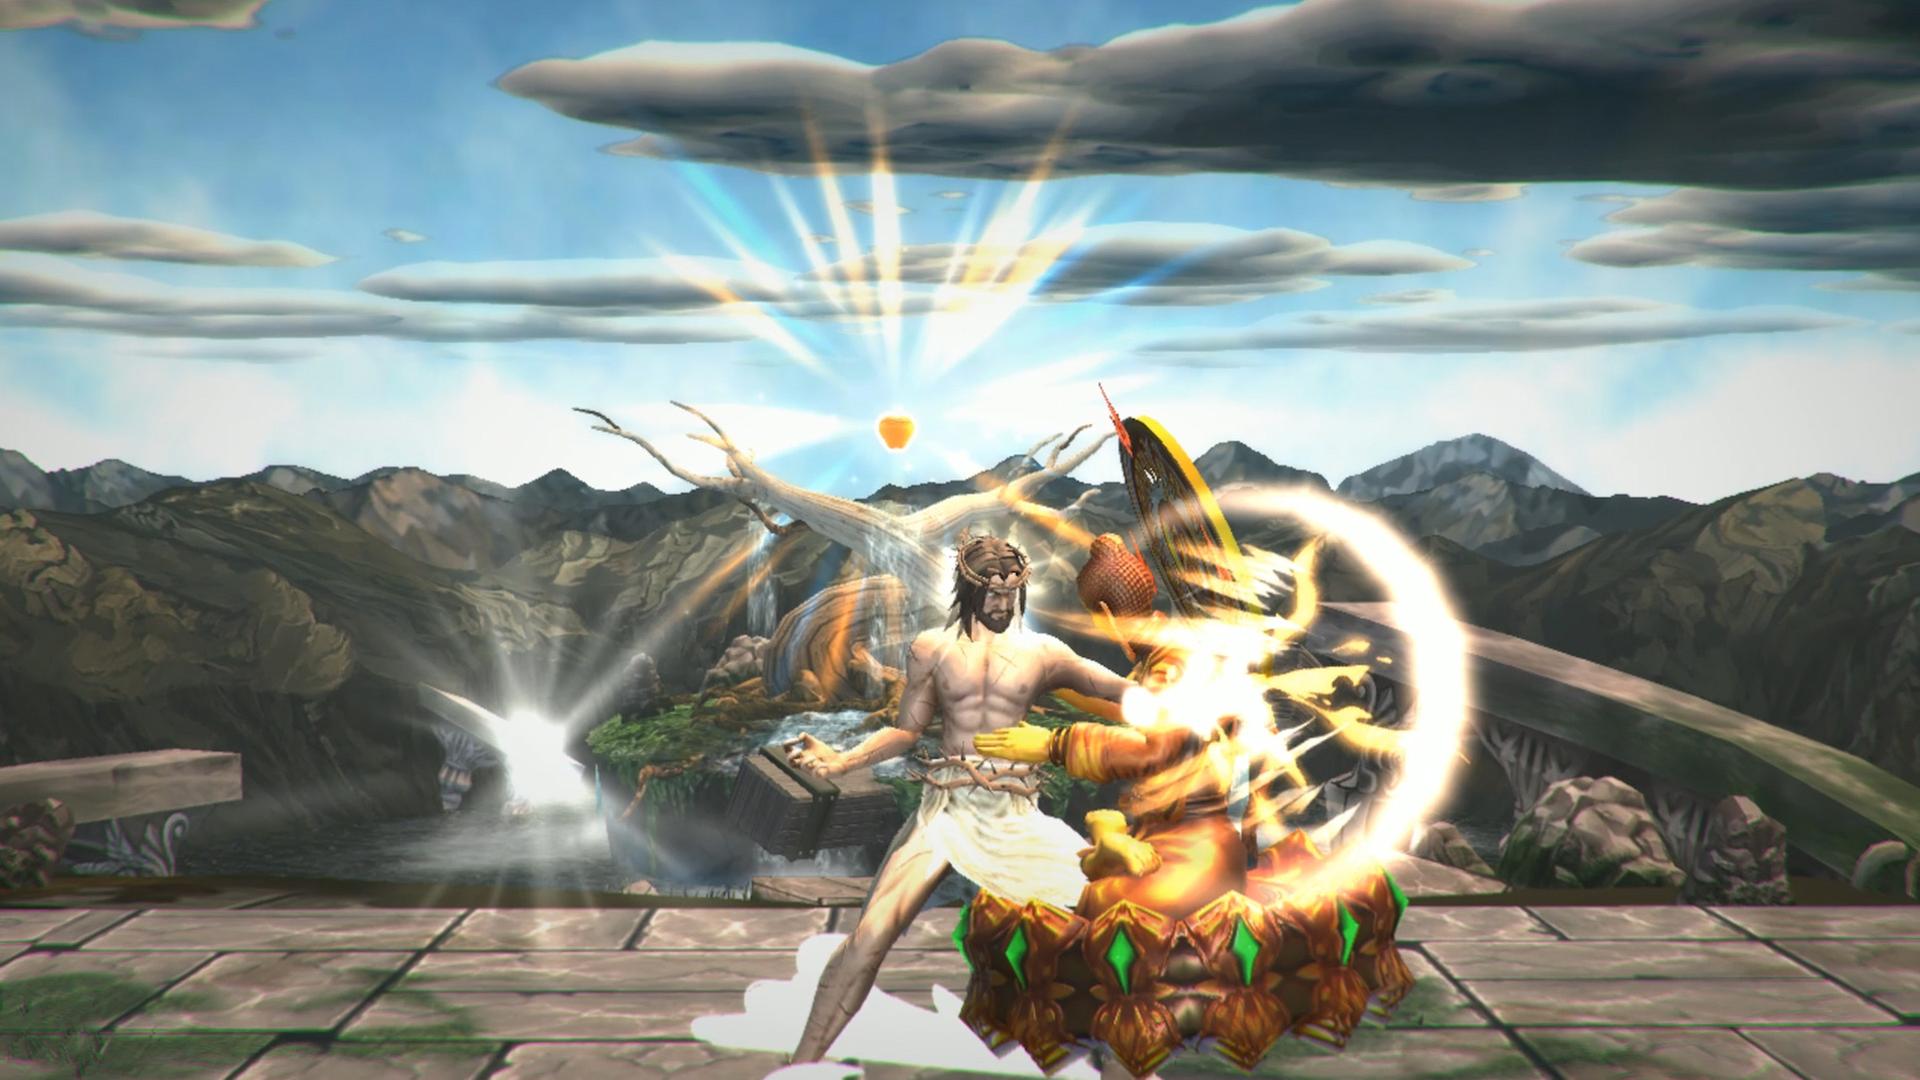 Screenshot aus "Fight of Gods" - Jesus und Buddha prügeln sich